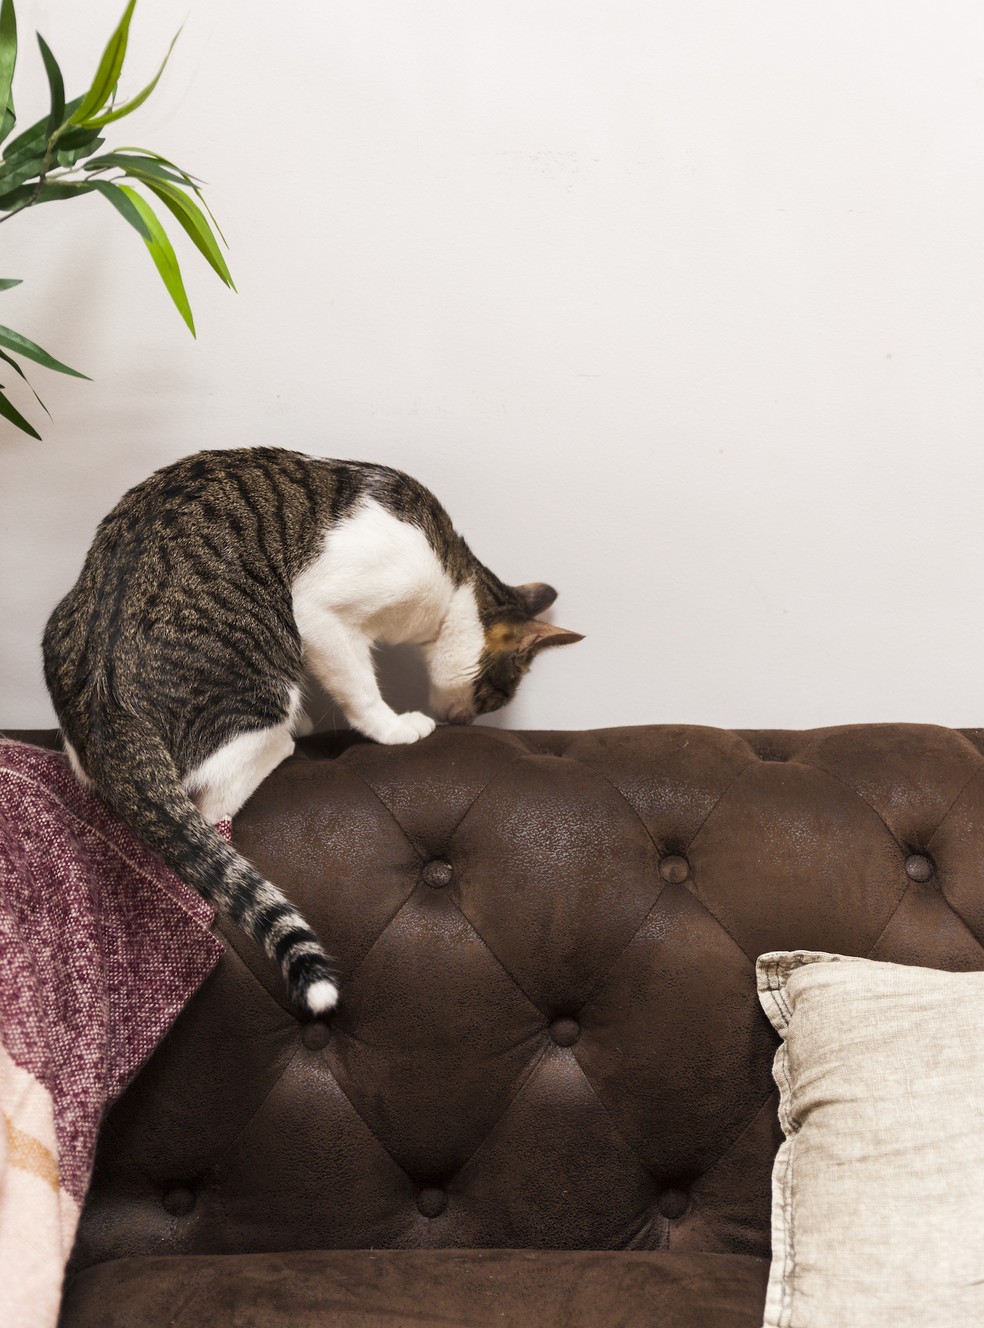 Sofás de couro evitam que os finos pelos de gatos se acomodem no tecido — Foto: Freepik / Creative Commons